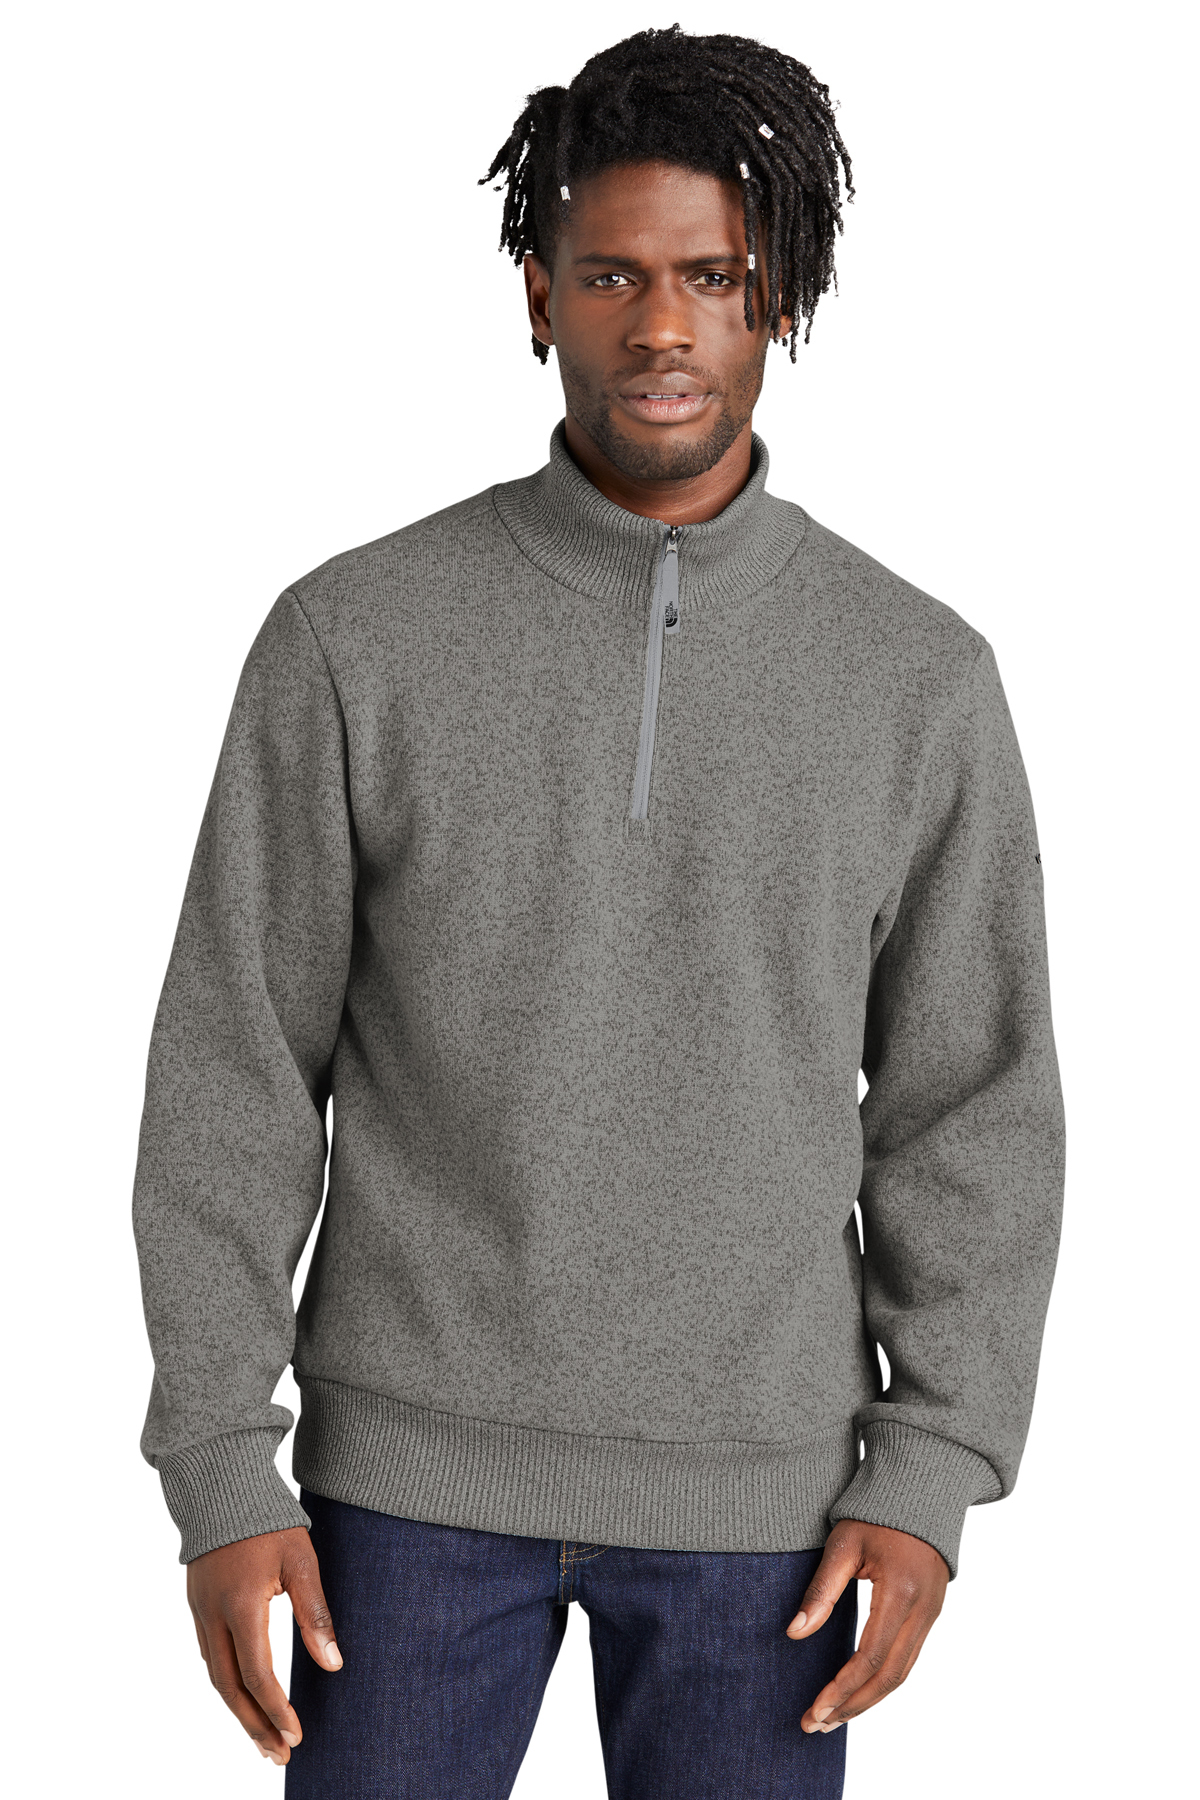 druk bezorgdheid Verhoog jezelf North Face® Pullover 1/2-Zip Sweater Fleece-NFOA51SE | Central Uniforms